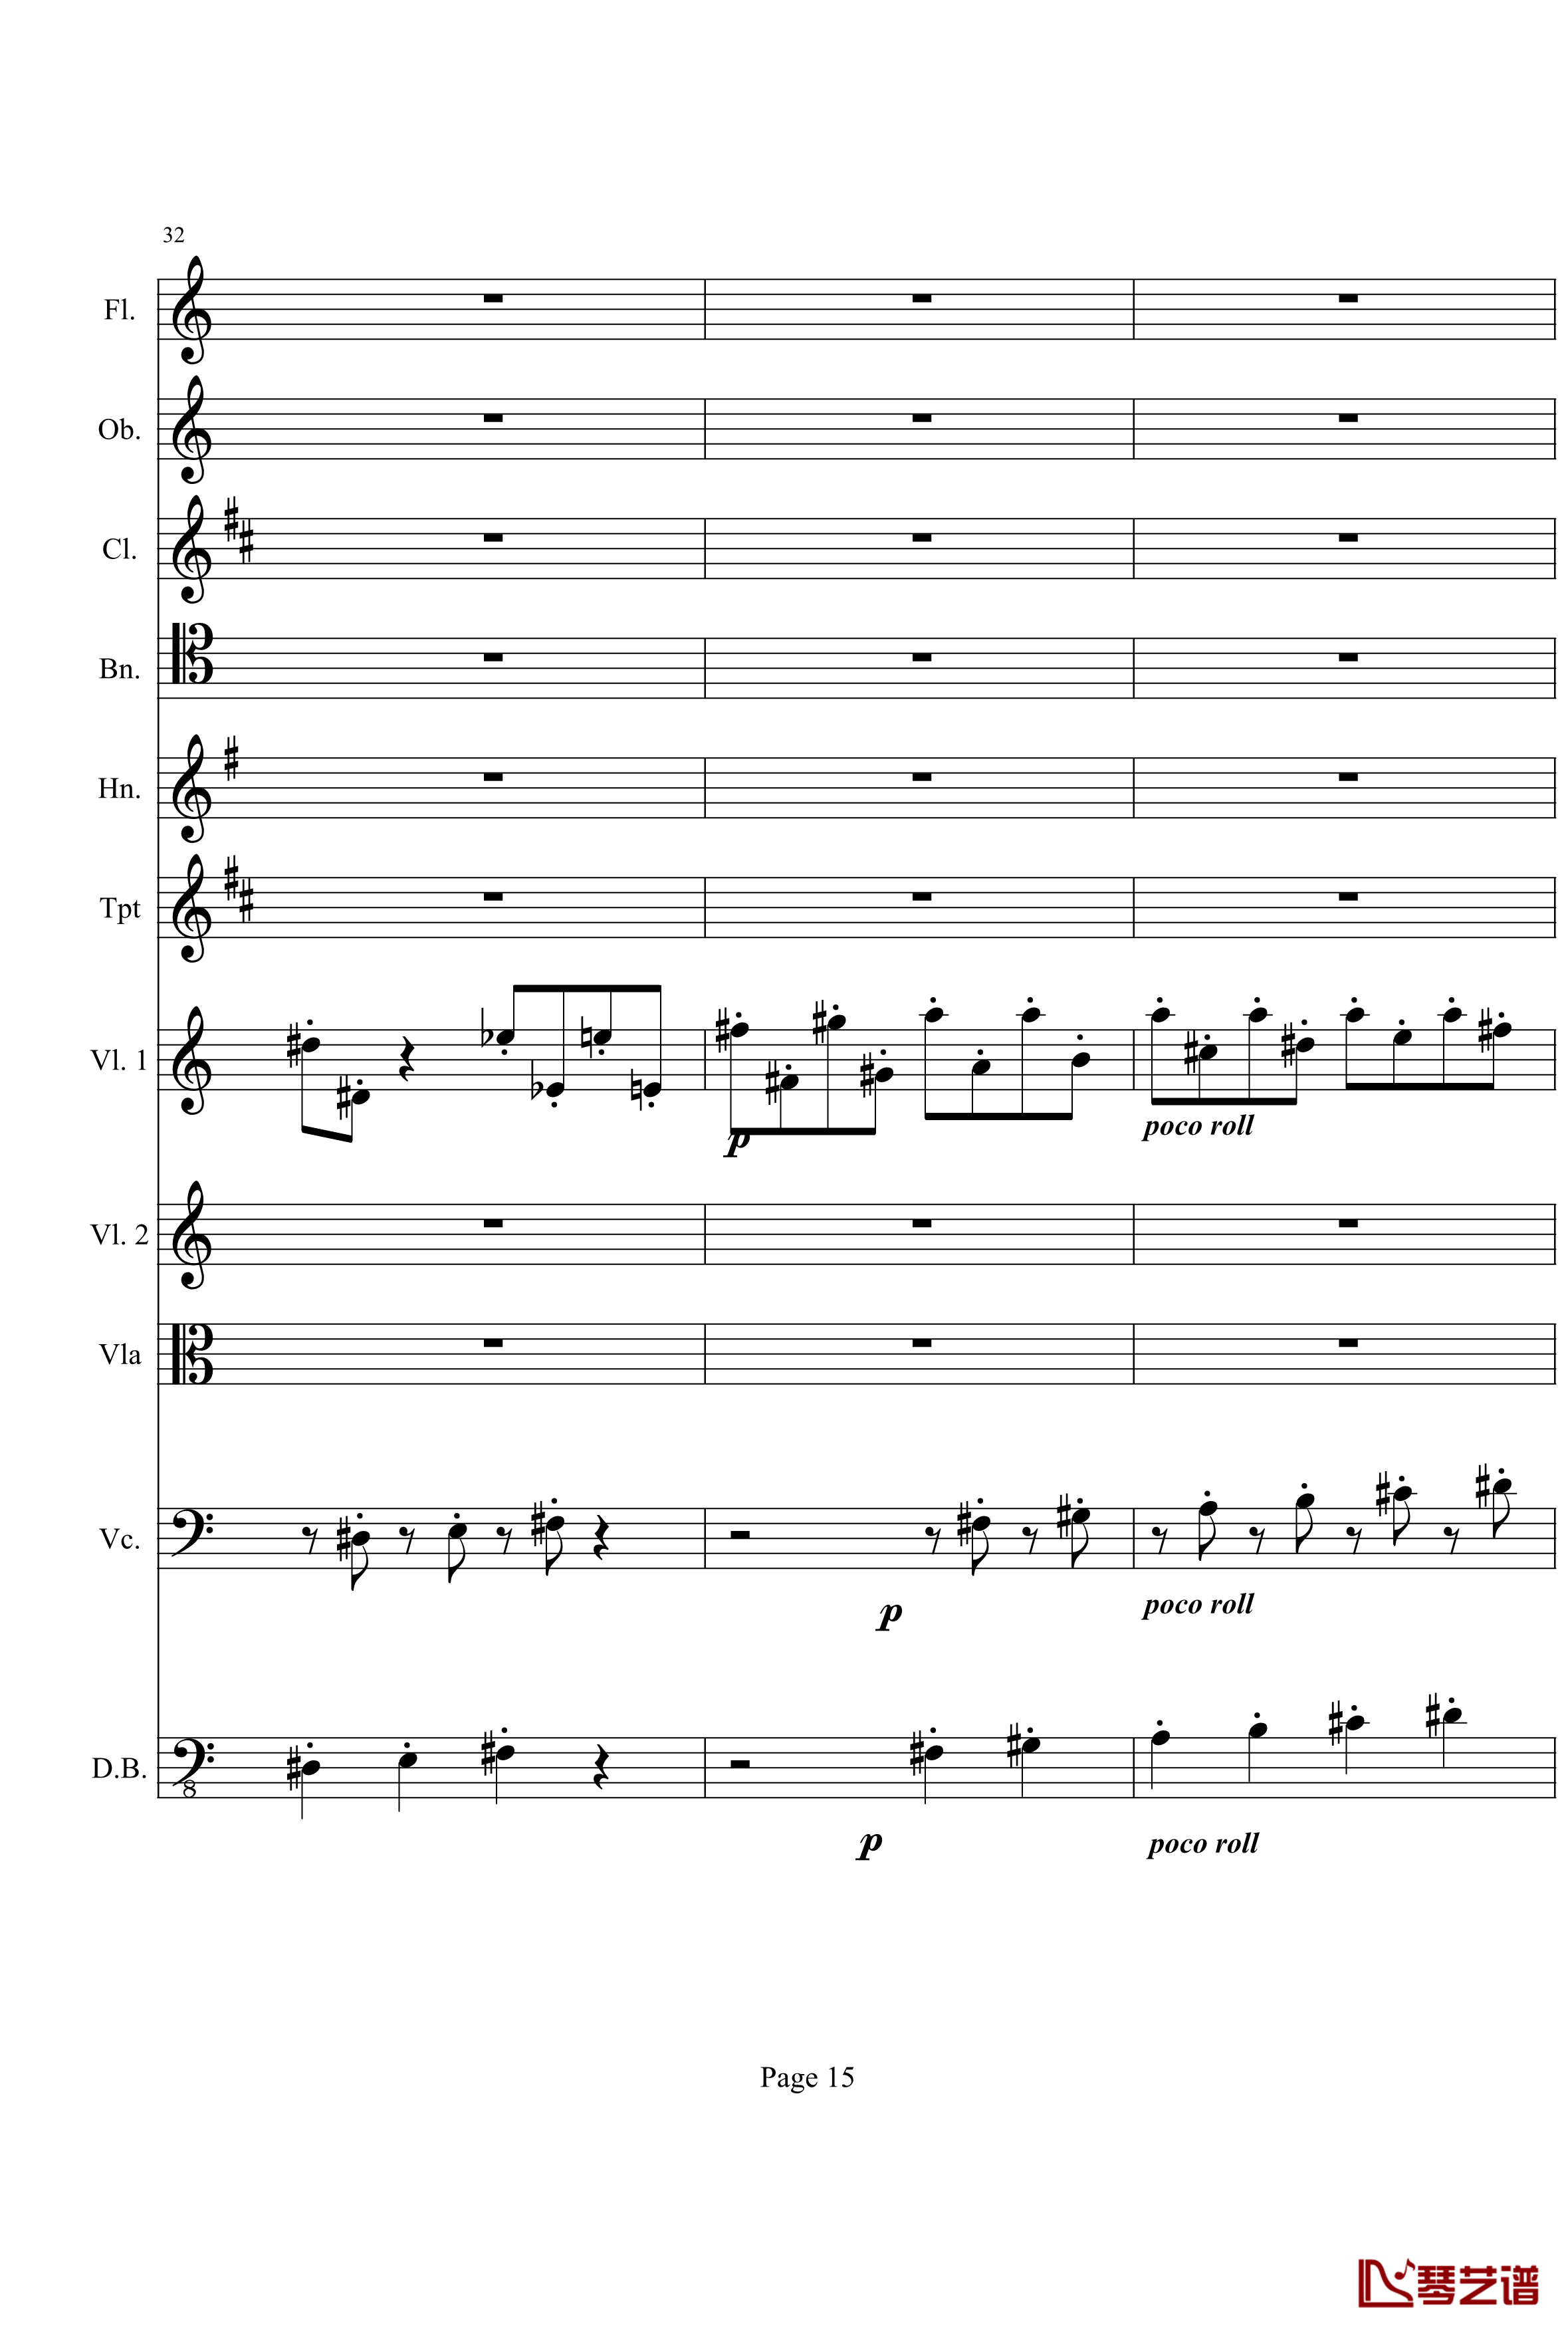 奏鸣曲之交响钢琴谱-第21-Ⅰ-贝多芬-beethoven15